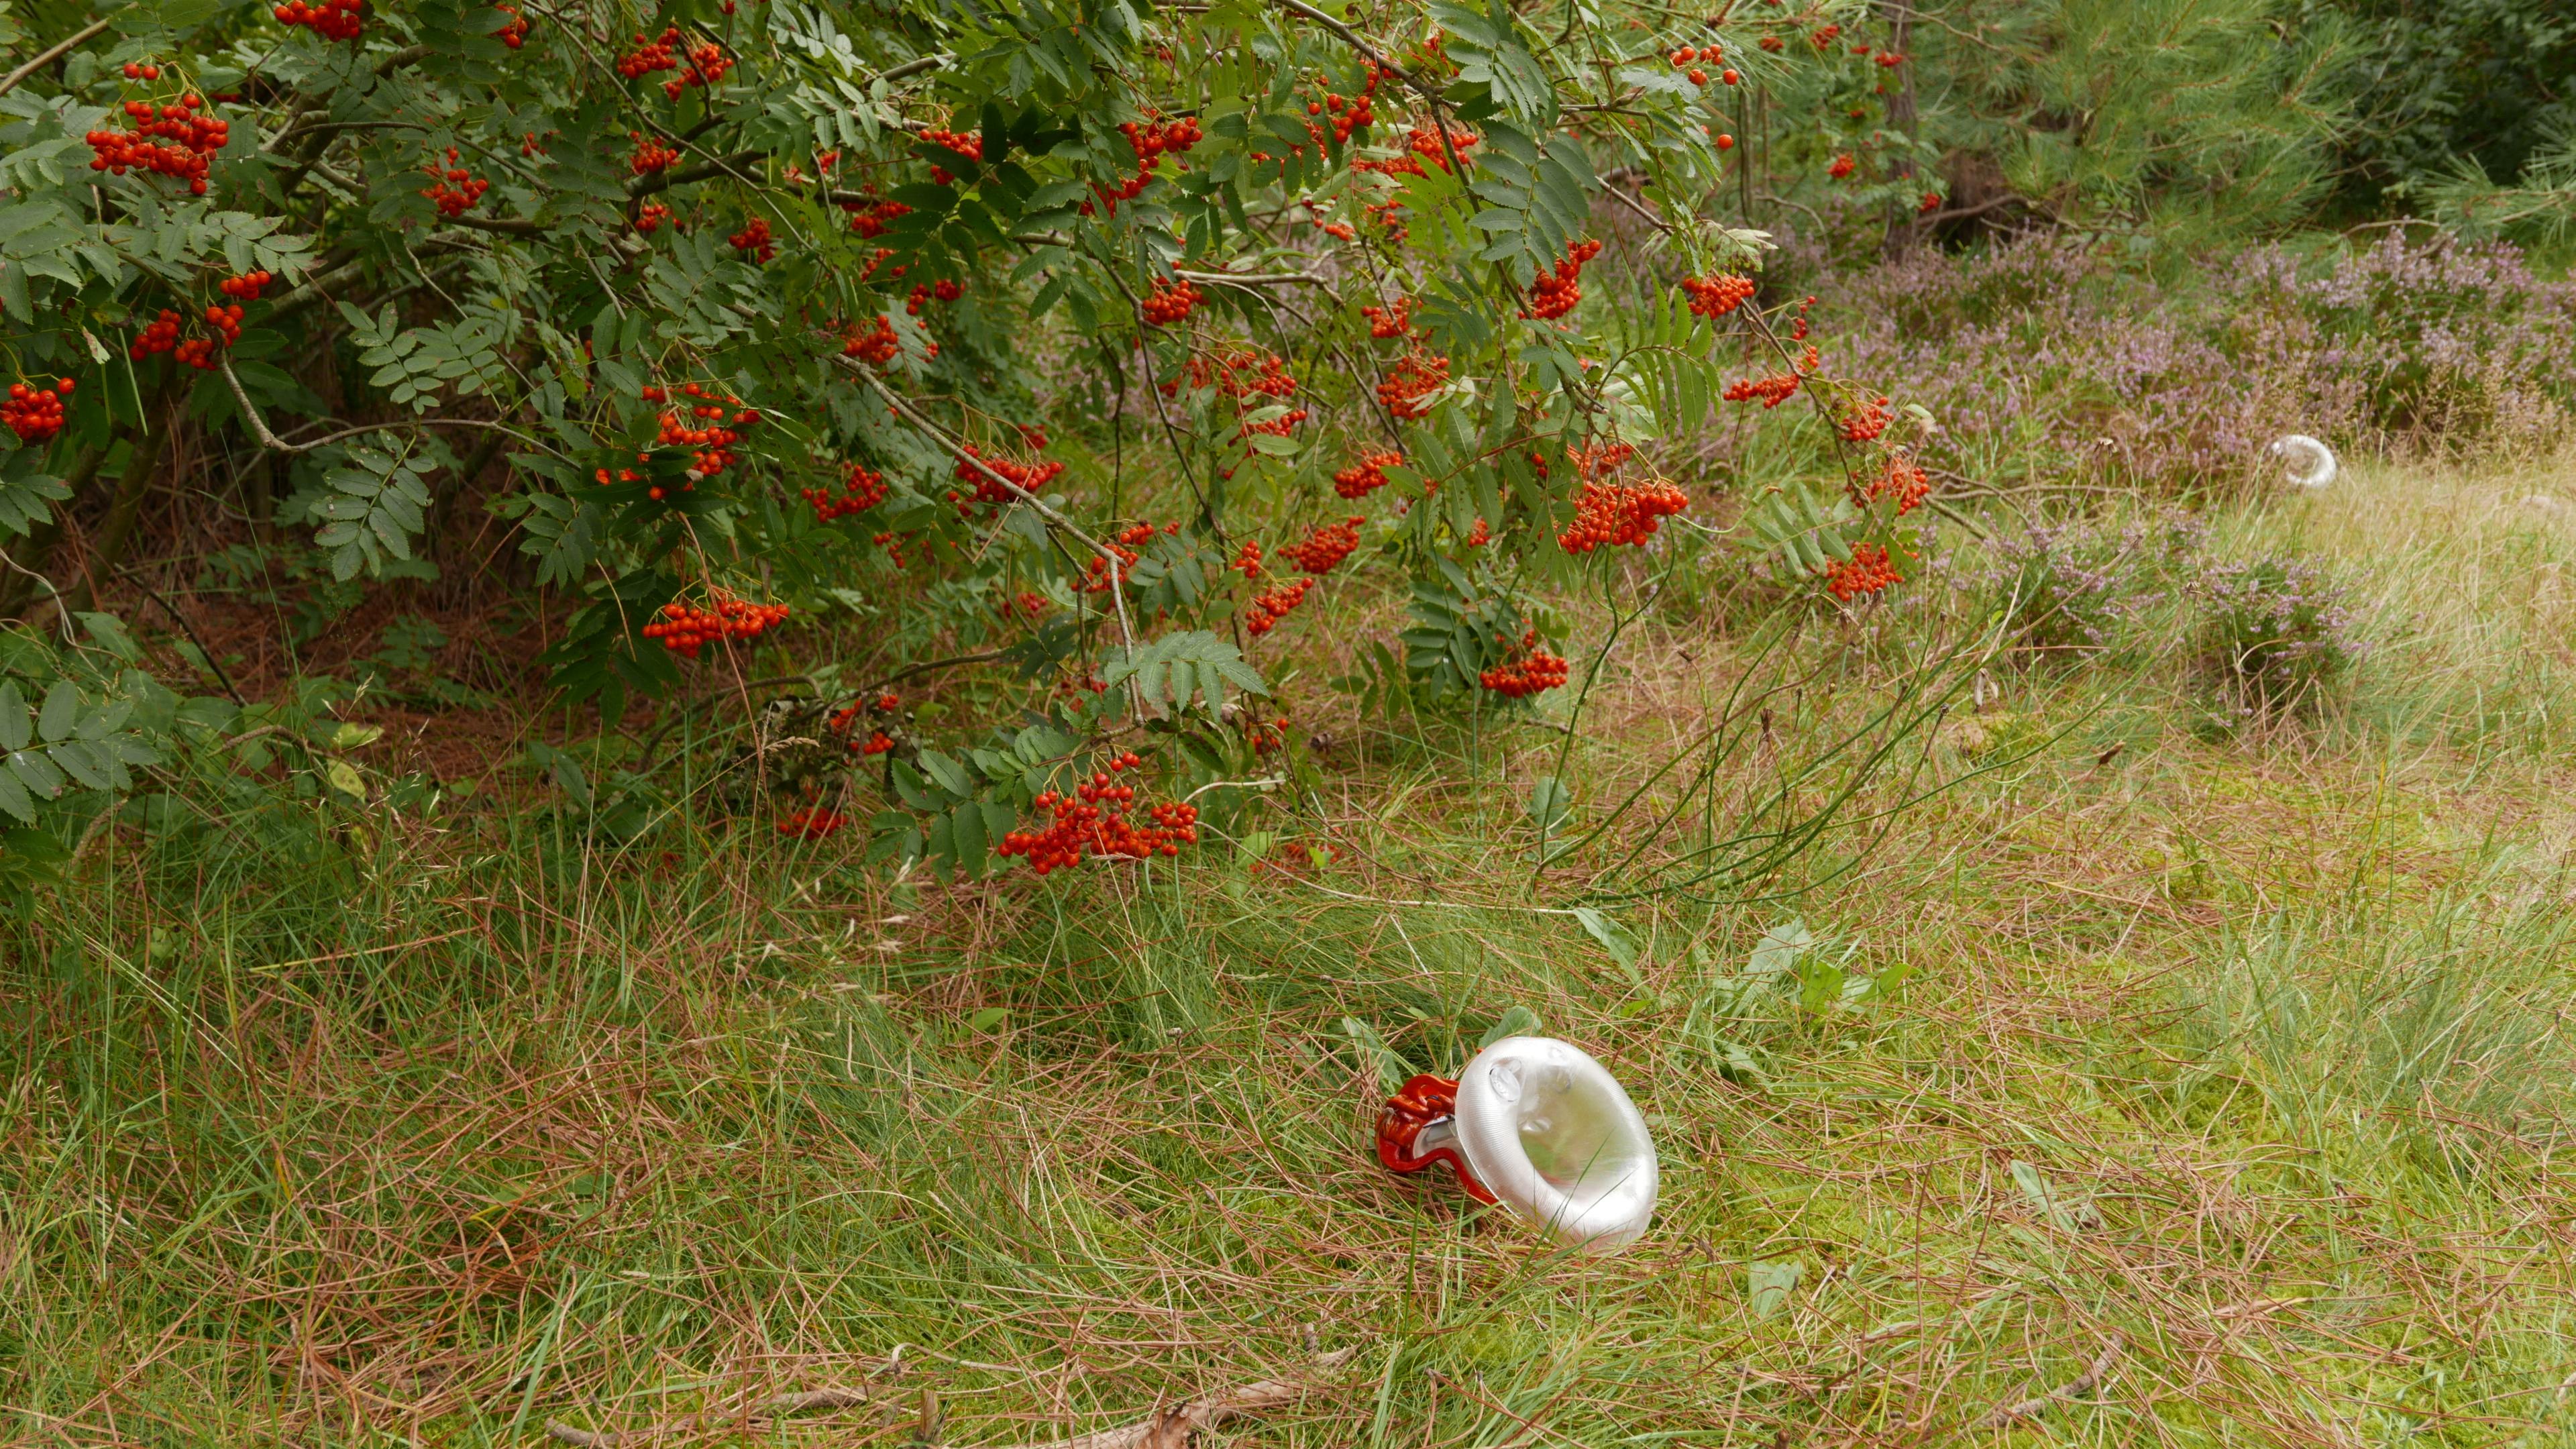 Komorebi installasjon. Rognebær busk og gress